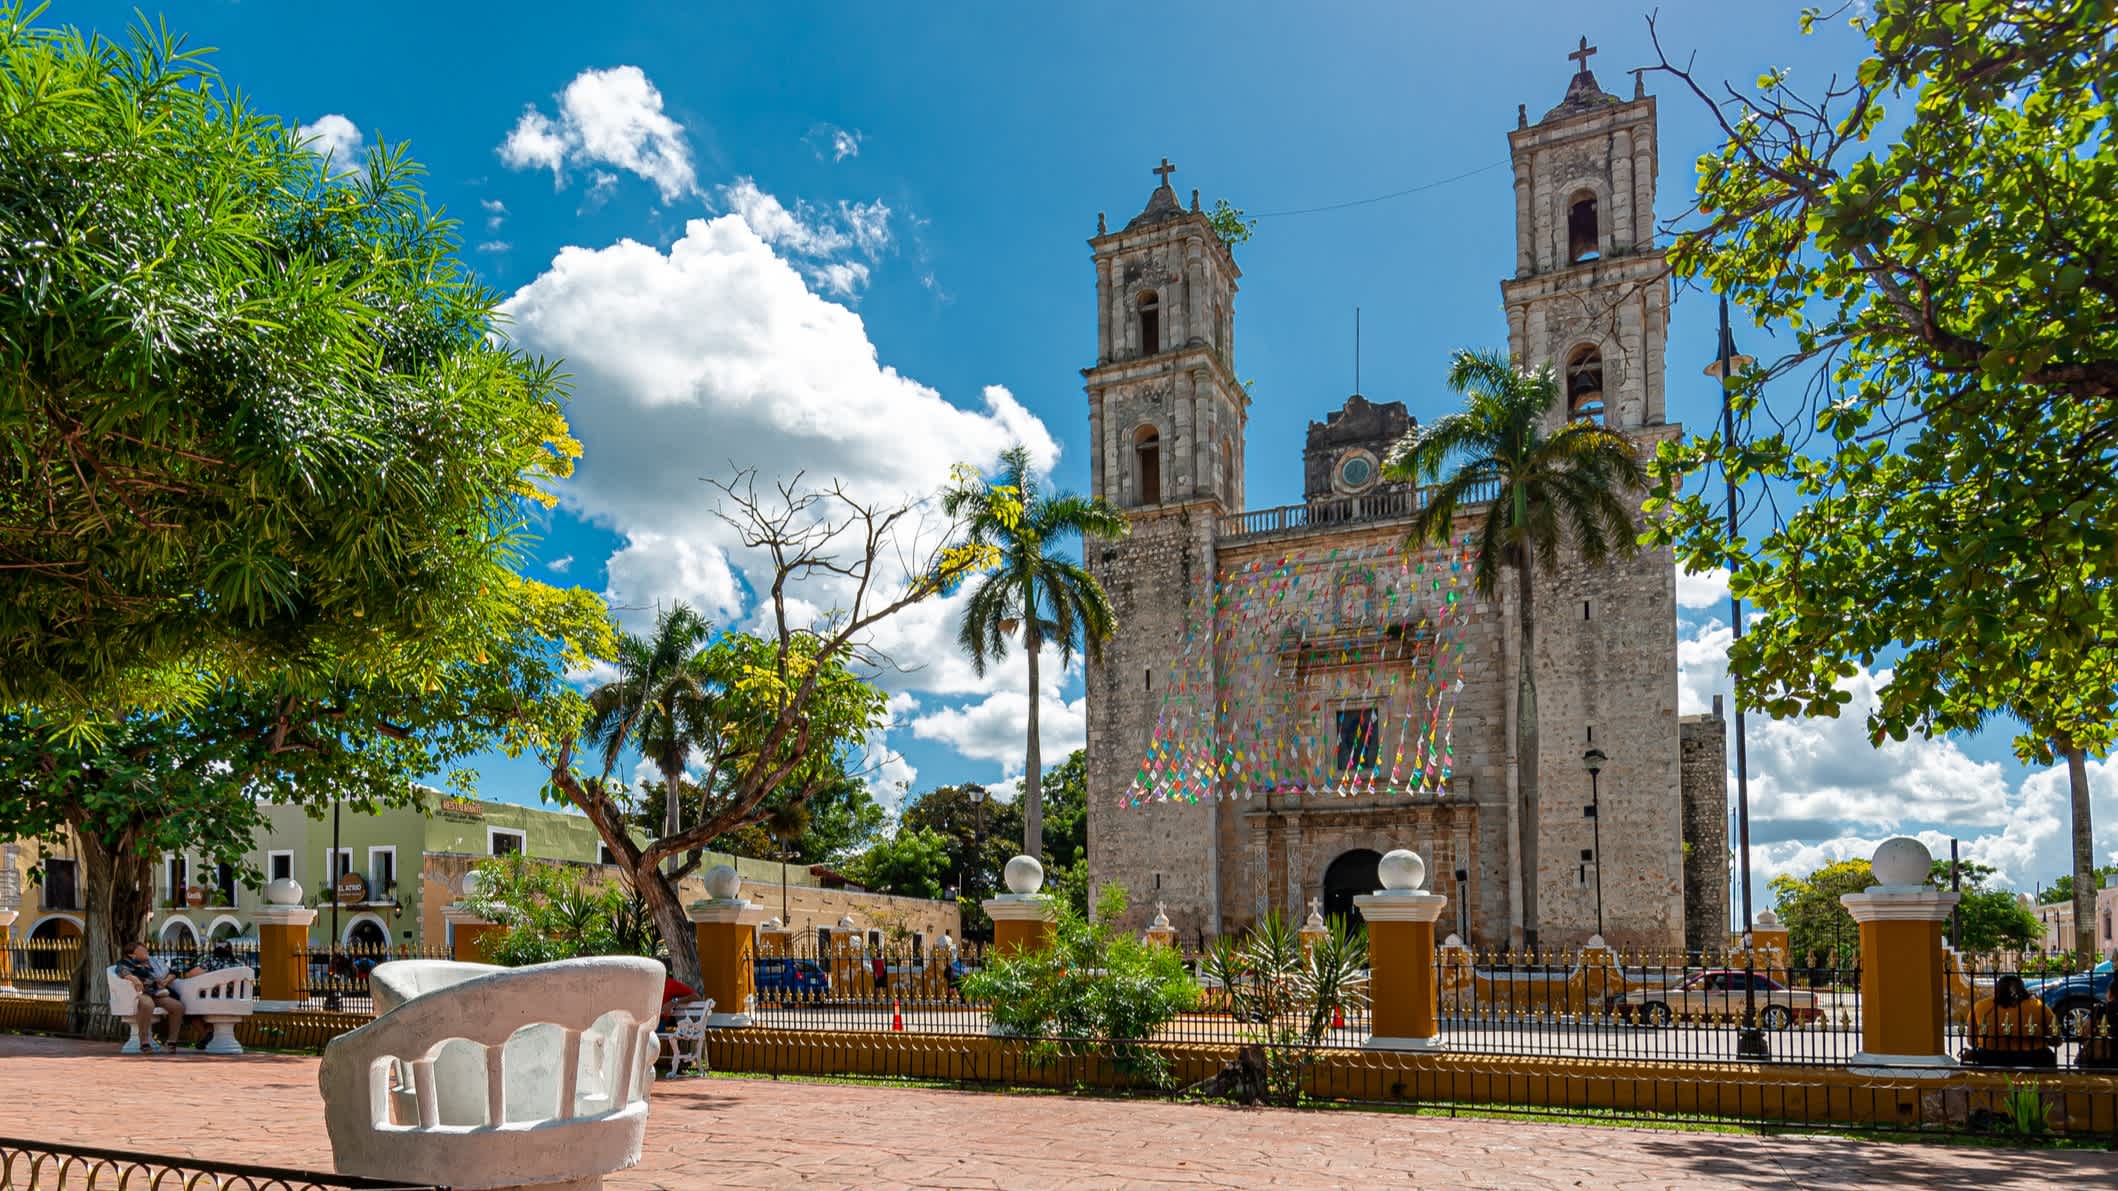 Vue de la place de la ville de Valladolid, au Yucatán, au Mexique.

